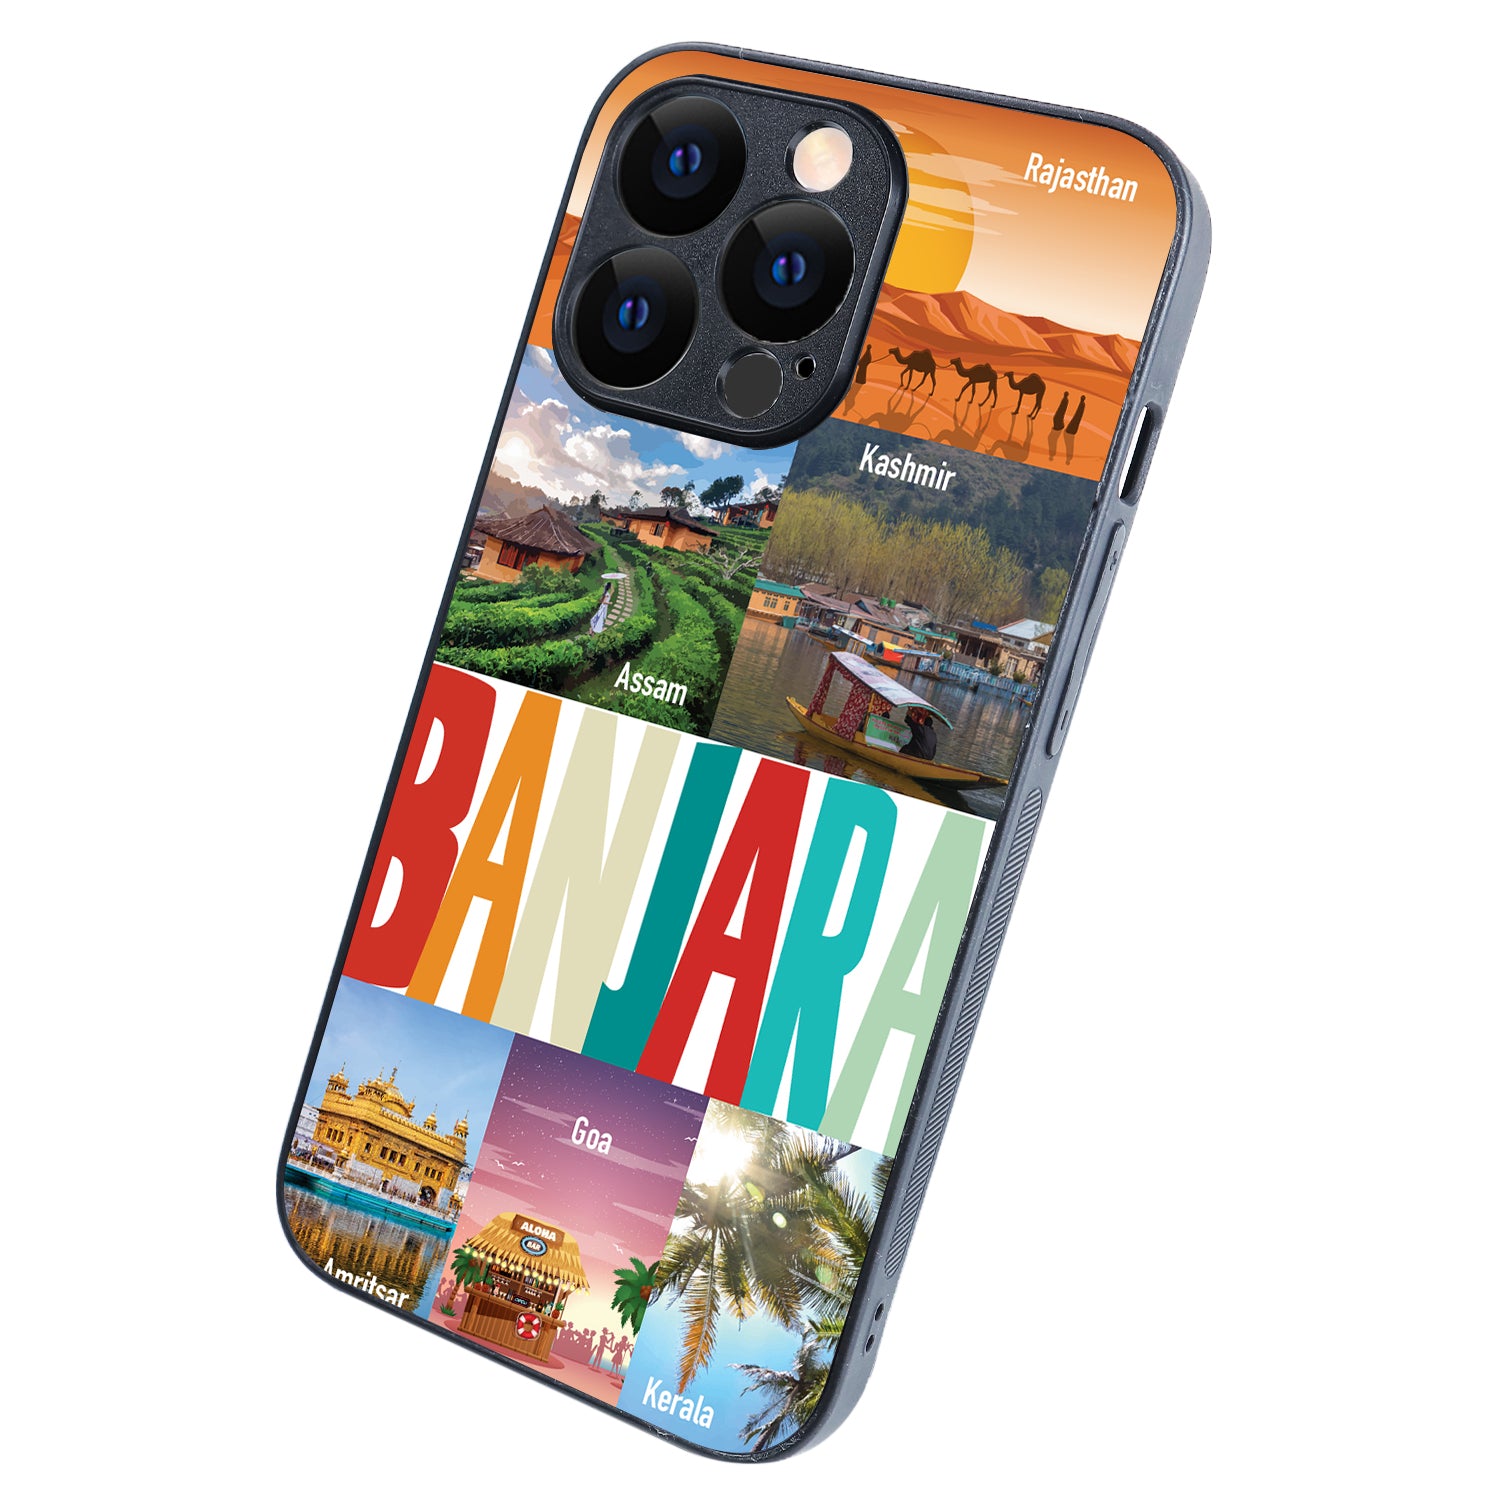 Banjara Travel iPhone 13 Pro Case